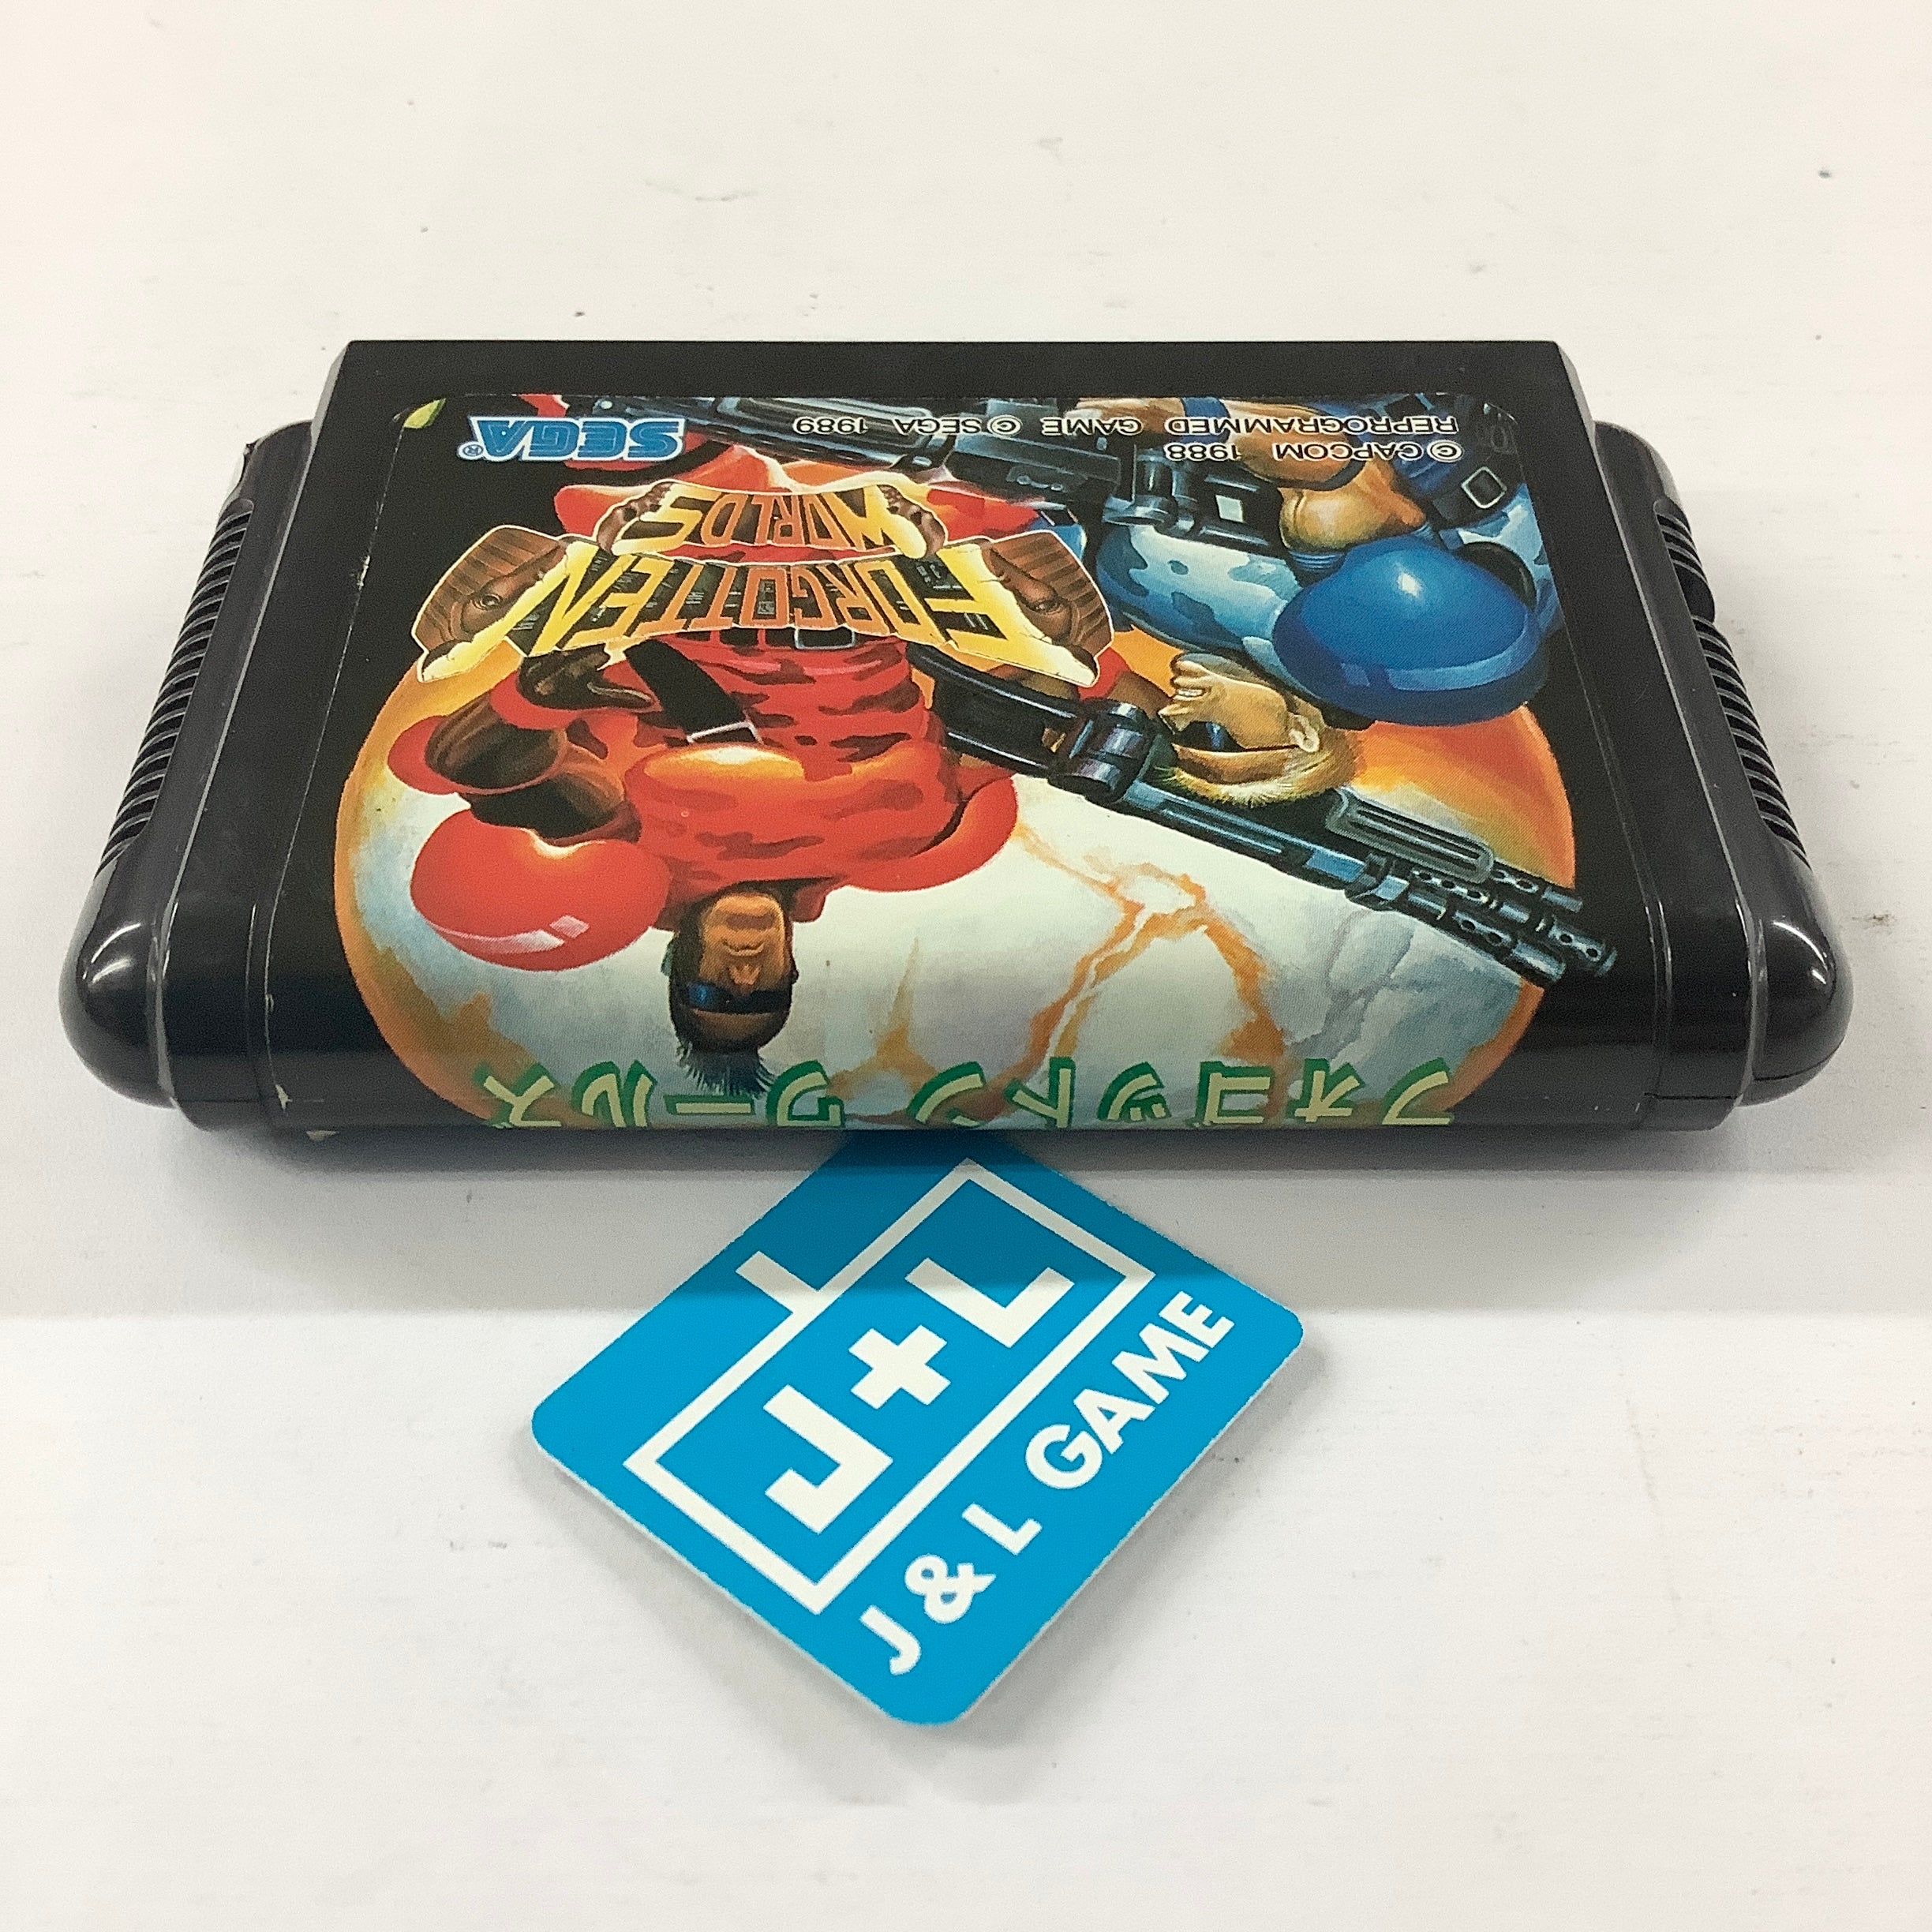 Forgotten Worlds - (SG) SEGA Mega Drive [Pre-Owned] (Japanese Import) Video Games Sega   